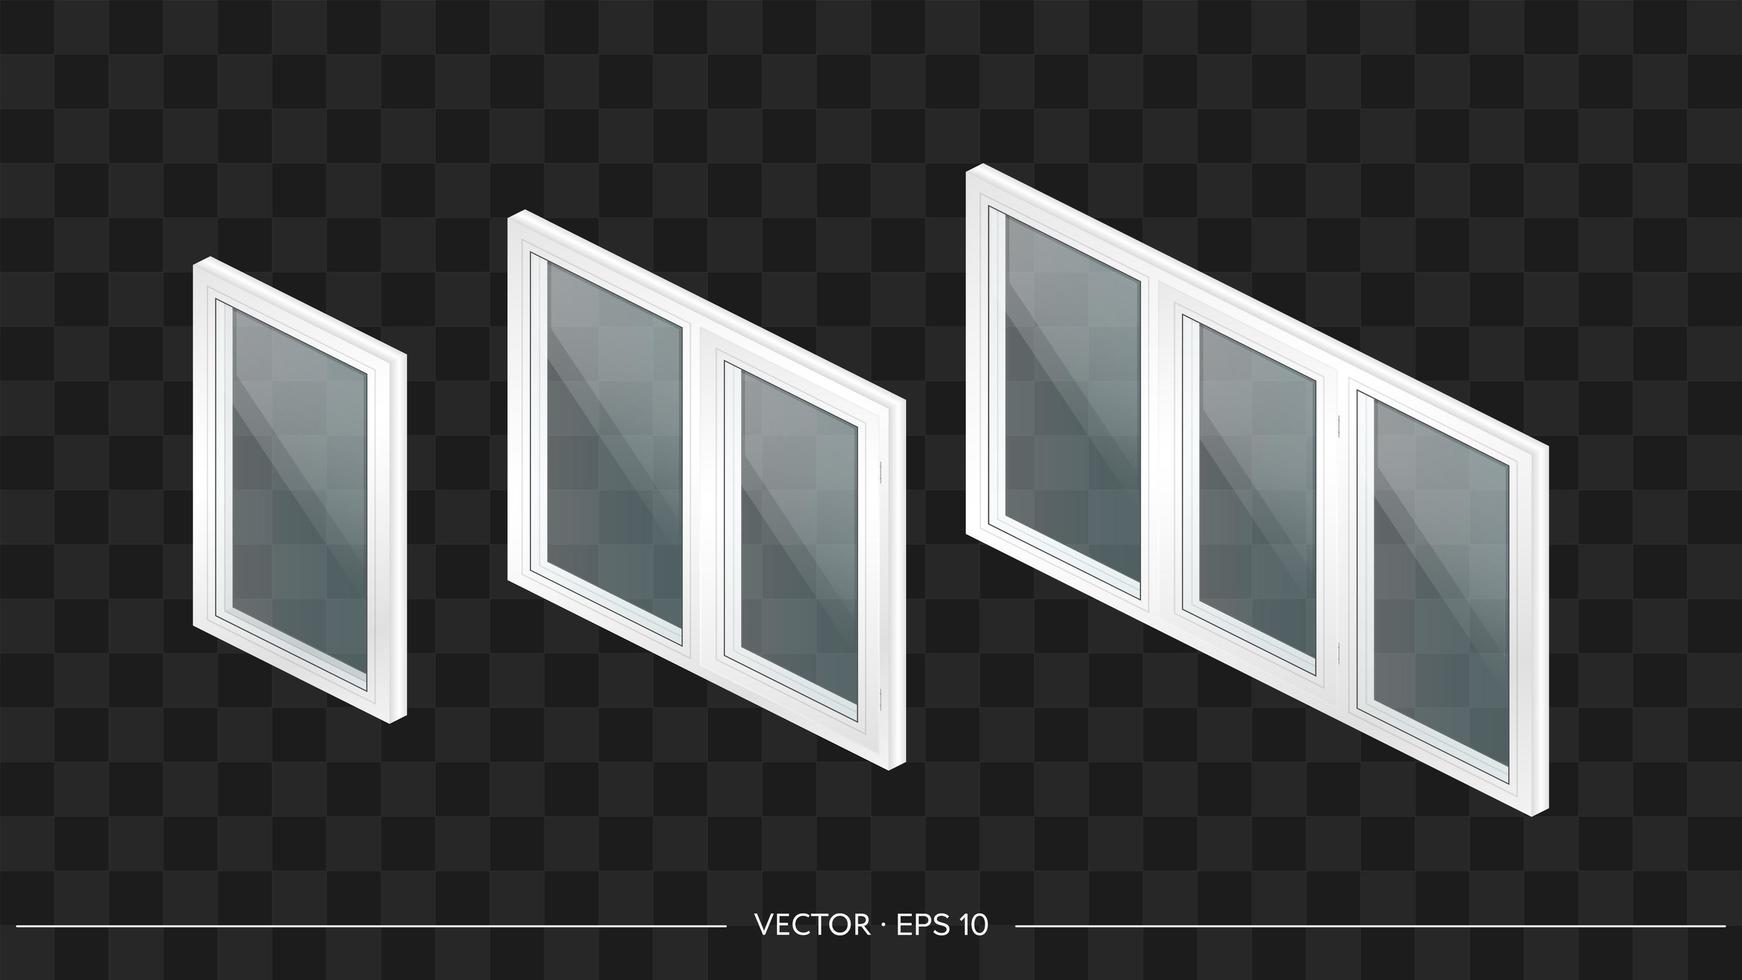 conjunto de ventanas de metal-plástico blanco con vidrios transparentes en 3d. ventana moderna en un estilo realista. isometría, ilustración vectorial. vector